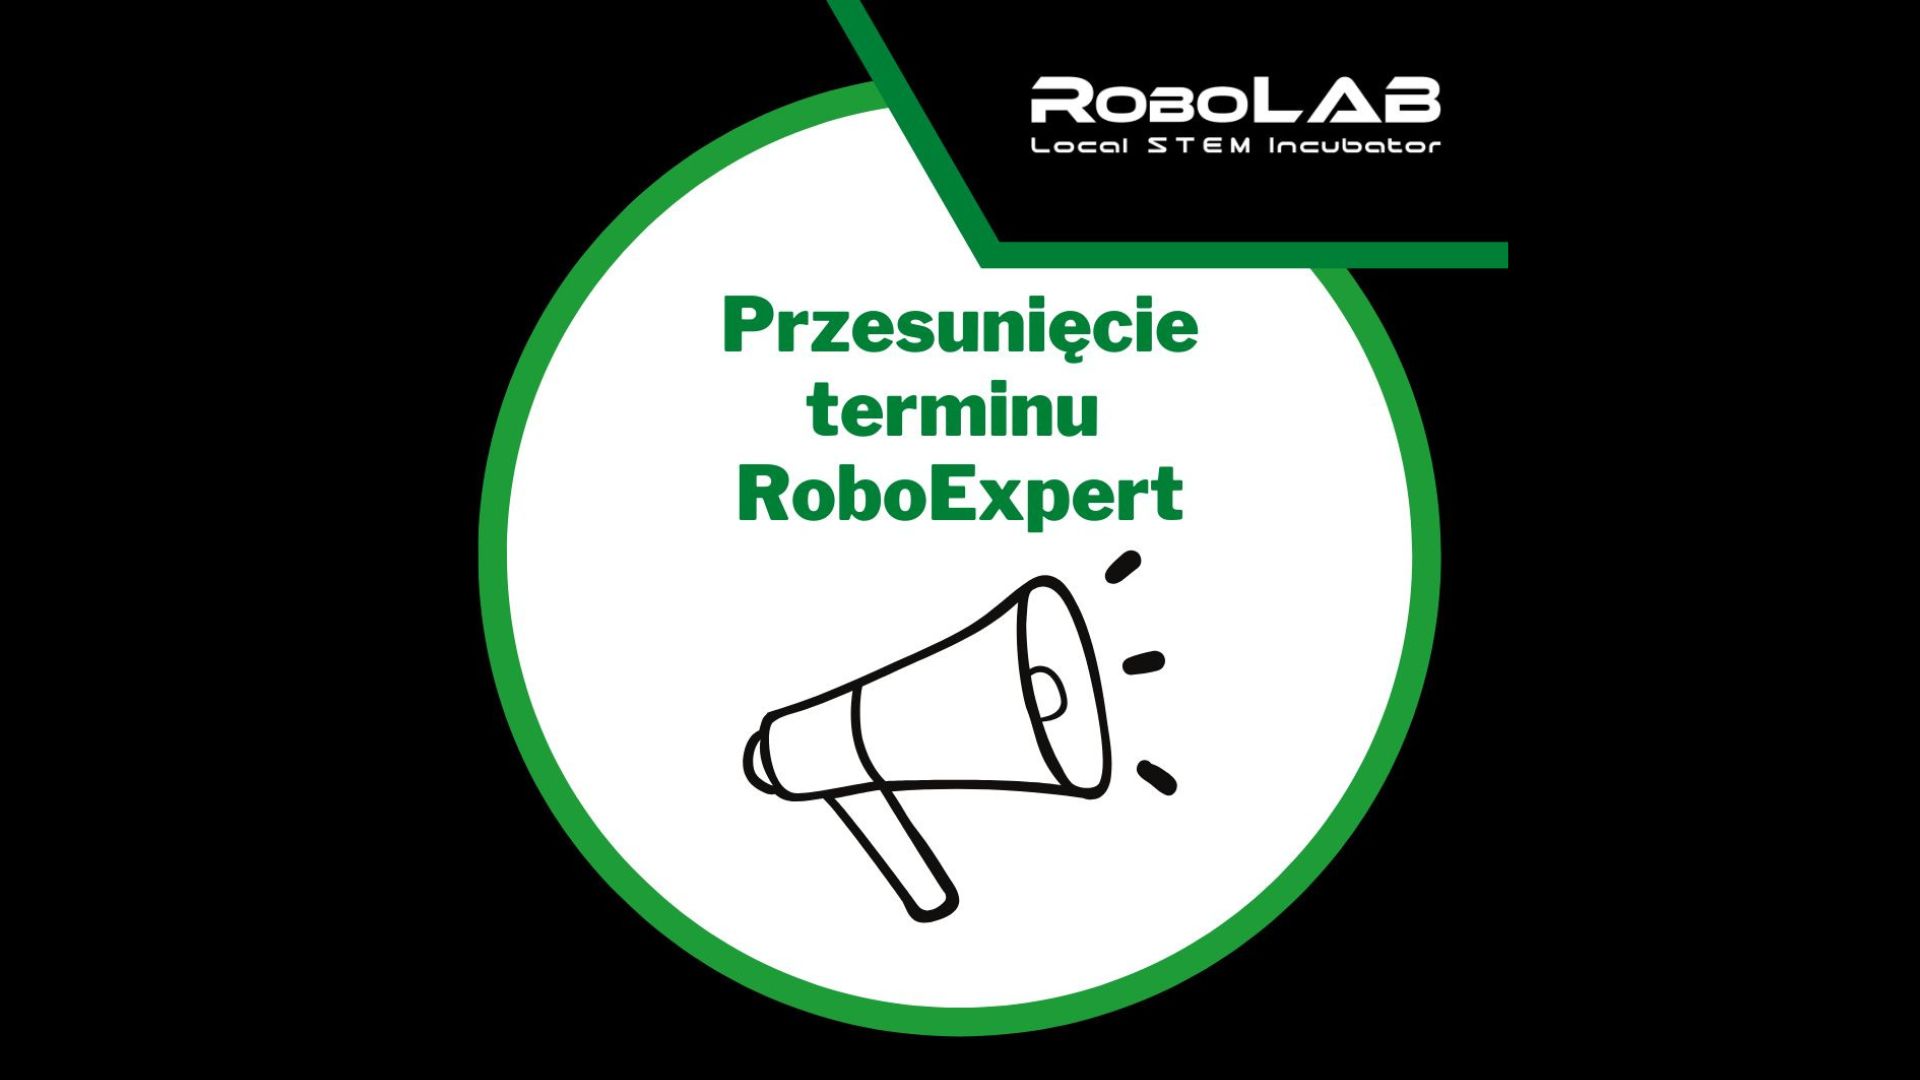 Przesunięcie zajęć RoboExpert